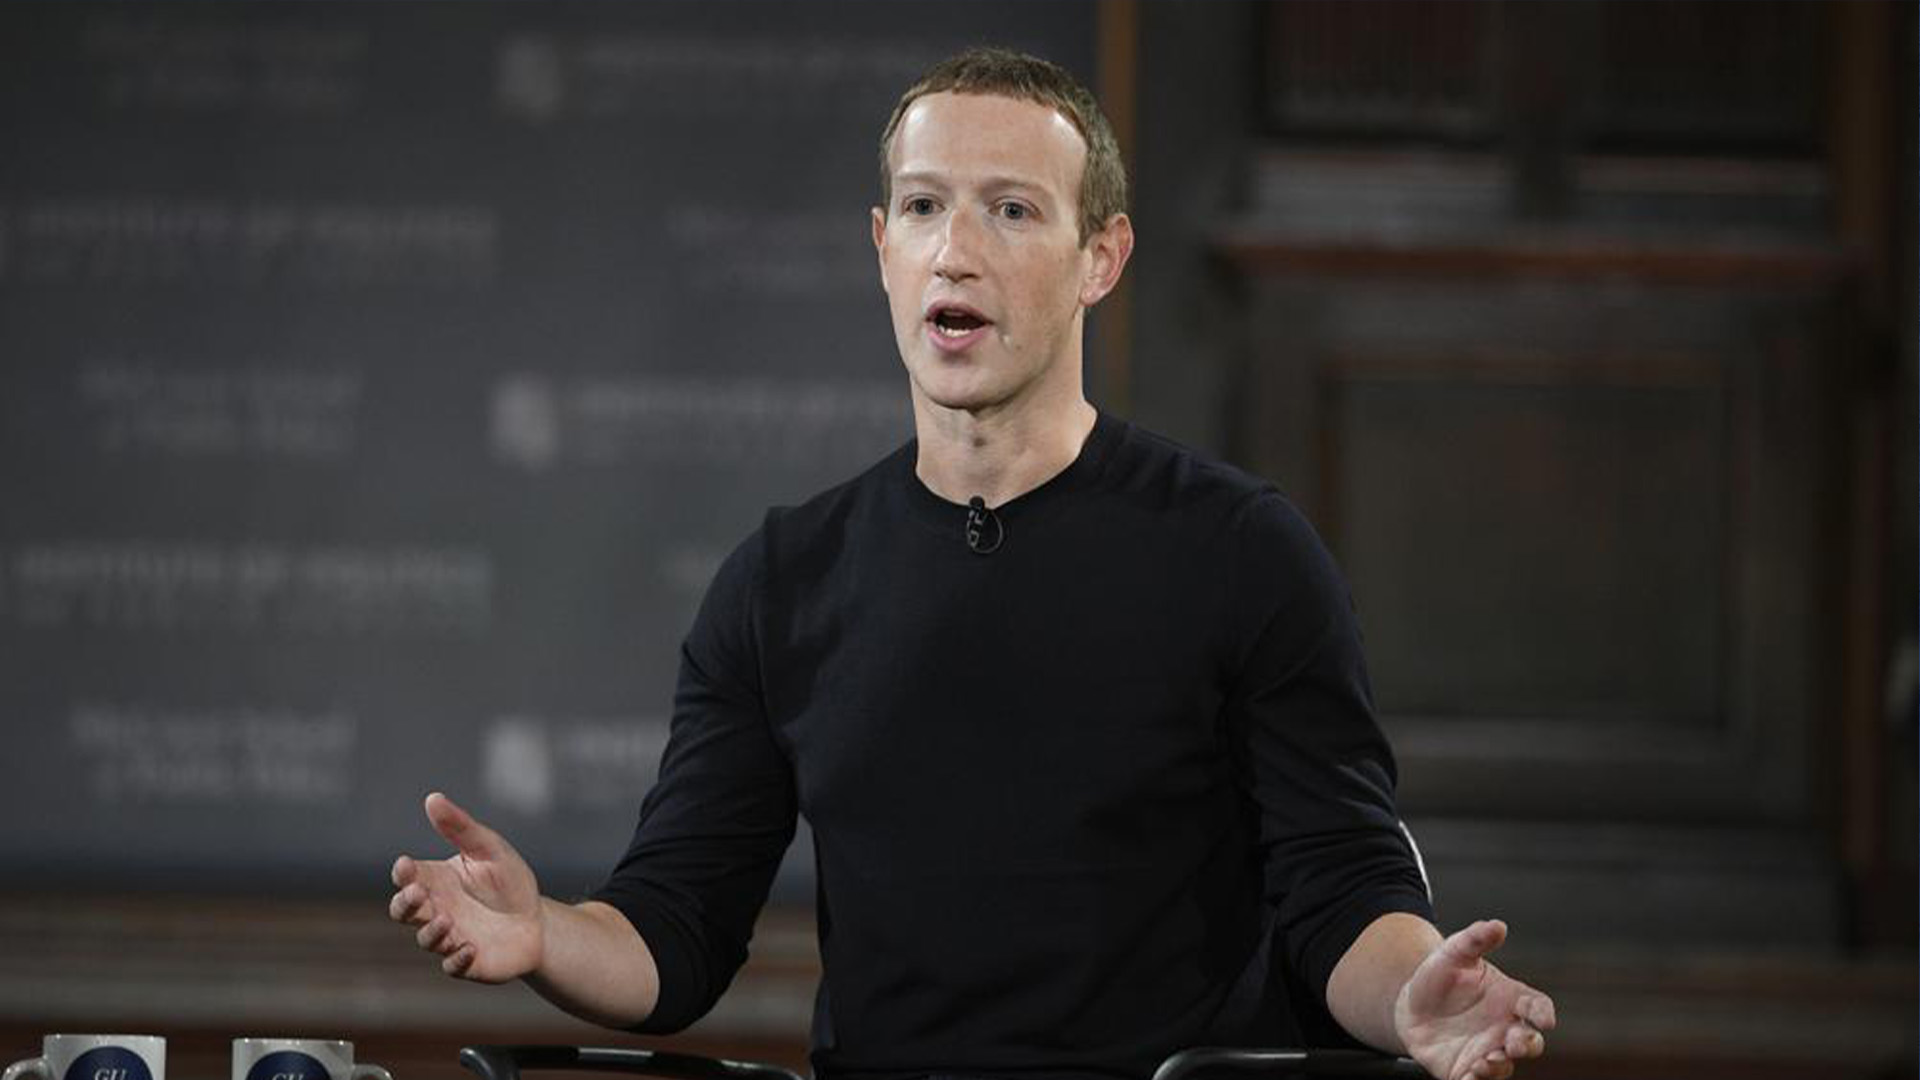 Le PDG de Facebook, Mark Zuckerberg, s'exprime à l'Université de Georgetown à Washington, le jeudi 17 octobre 2019. Le parent de Facebook, Meta, licencie 11 000 personnes, soit environ 13% de ses effectifs, alors qu'il fait face à des revenus en baisse et à des problèmes plus larges de l'industrie technologique, a déclaré Zuckerberg dans une lettre aux employés mercredi.